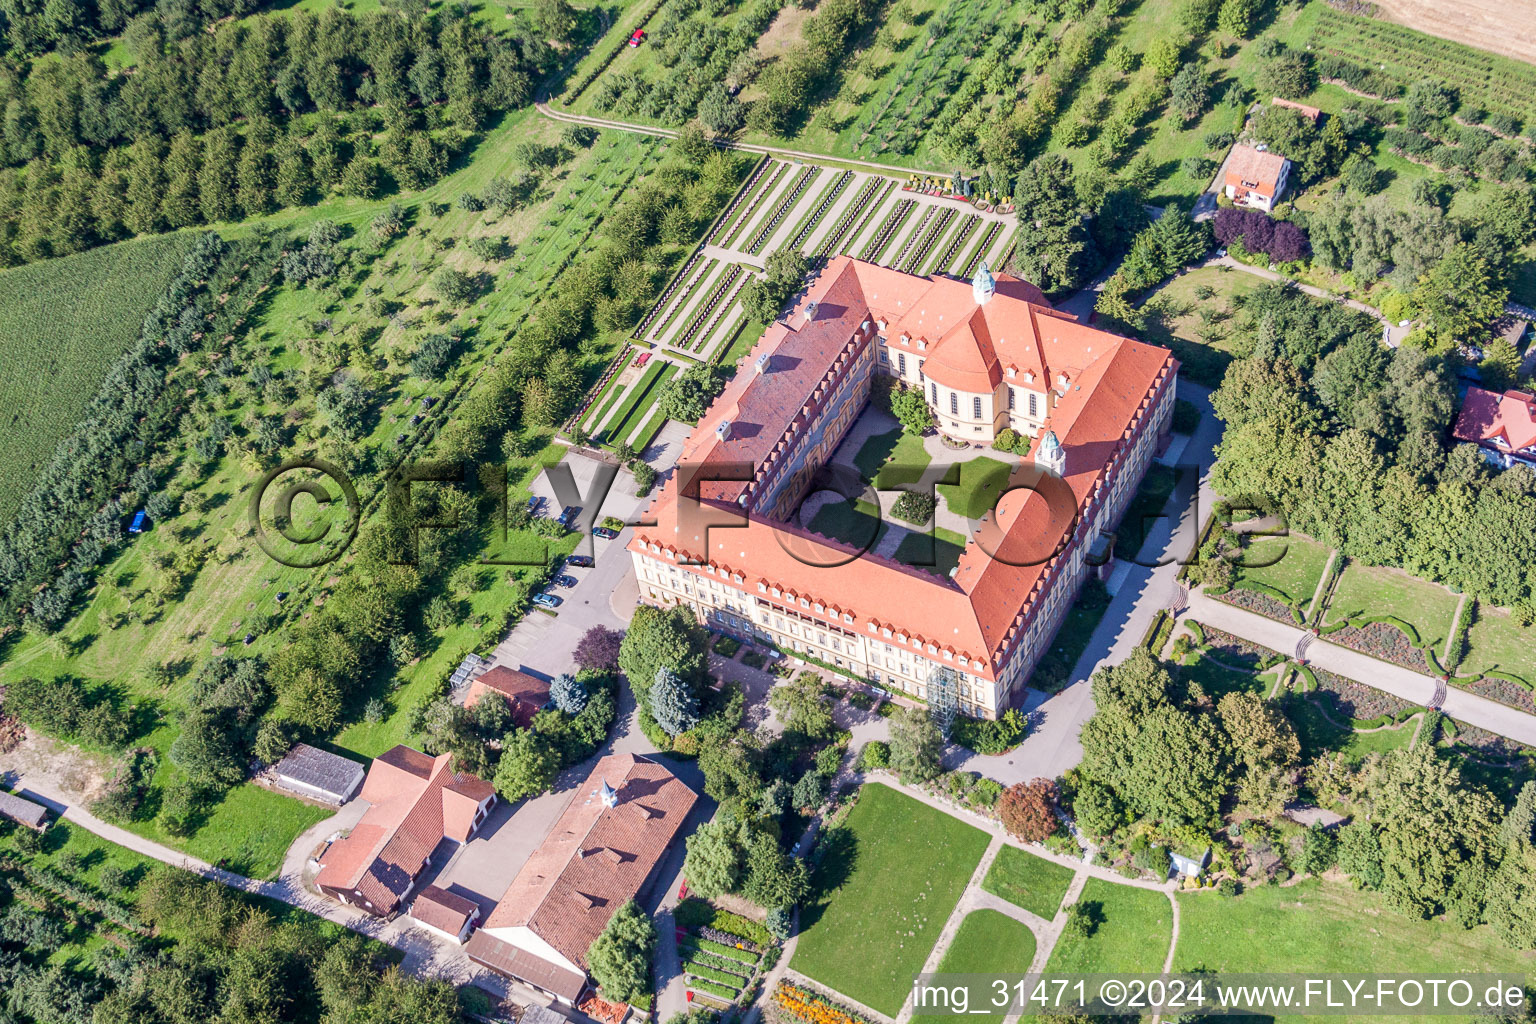 Photographie aérienne de Ensemble immobilier du monastère des sœurs franciscaines Erlenbad eV dans le quartier d'Obersasbach à Sasbach dans le département Bade-Wurtemberg, Allemagne